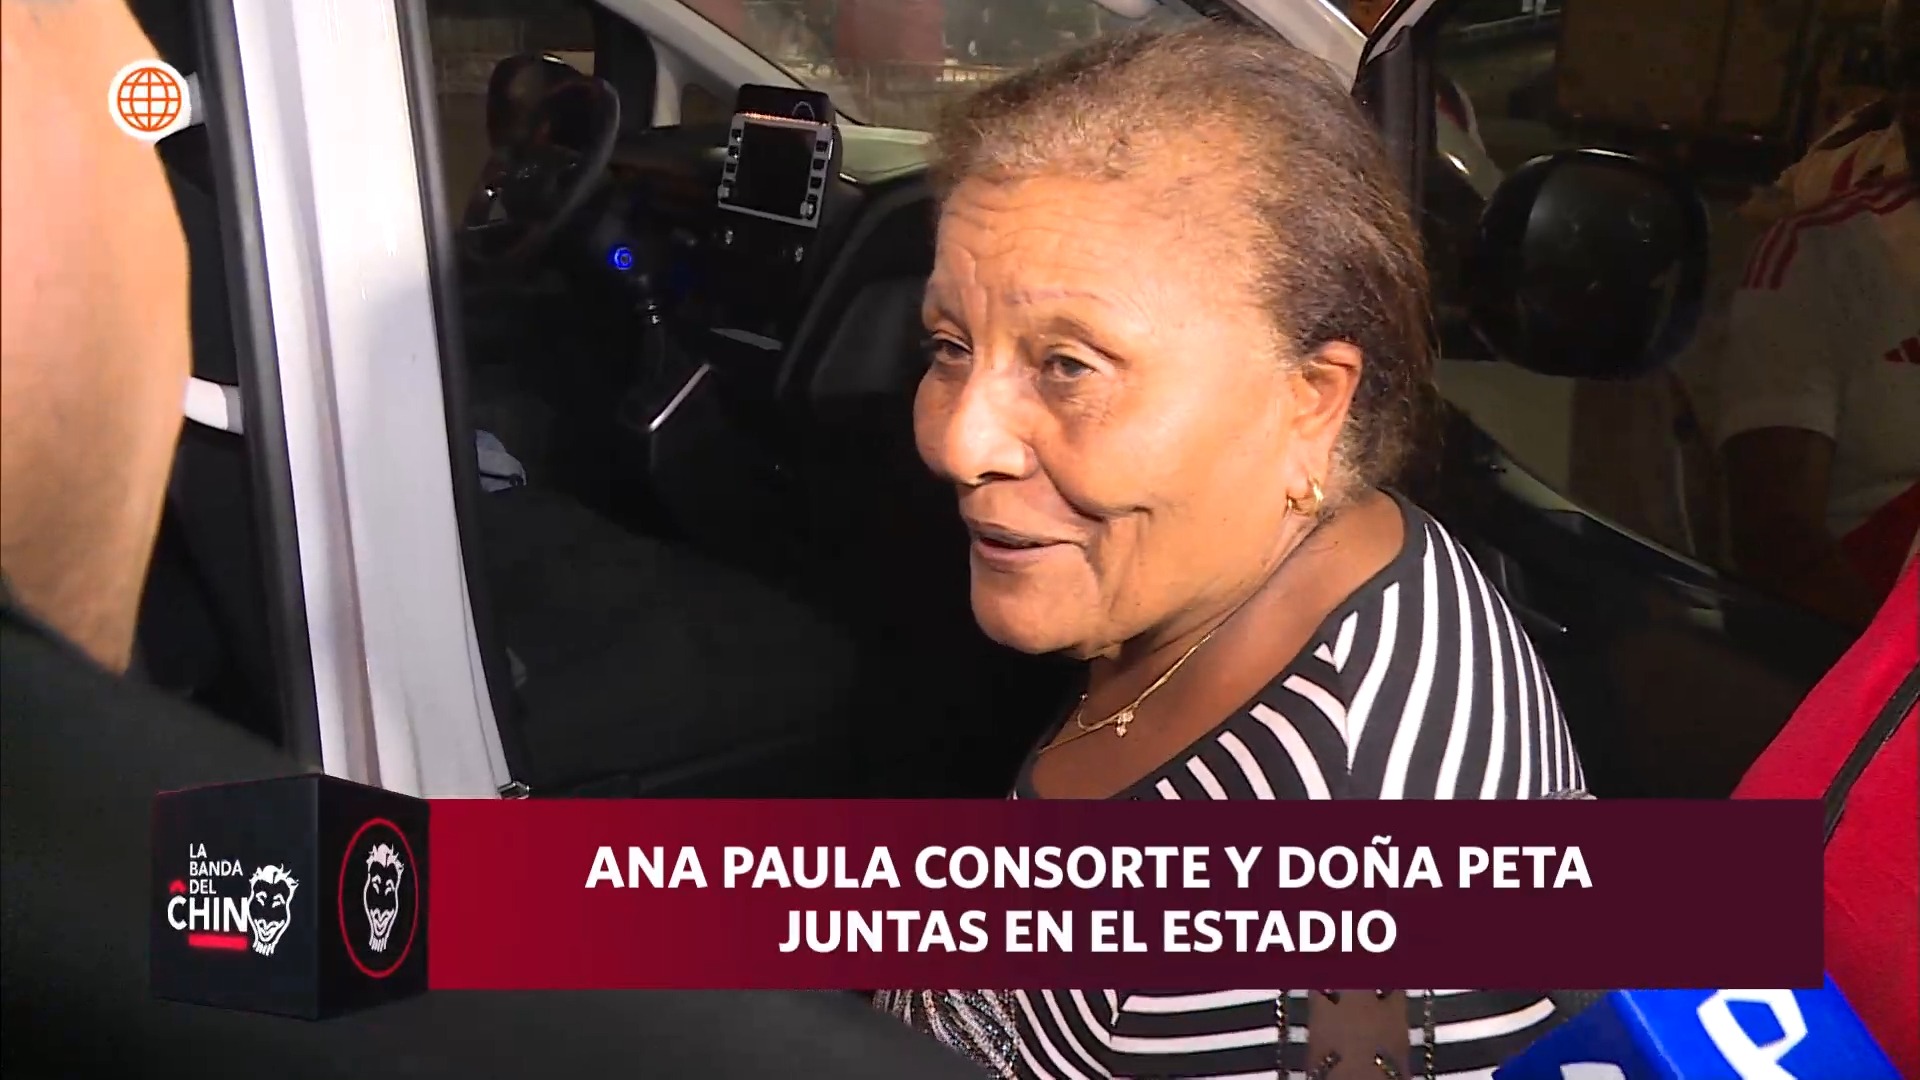 Doña Peta estuvo con Ana Paula Consorte en el estadio viendo el partido de Perú vs Nicaragua/Foto: La Banda del Chino